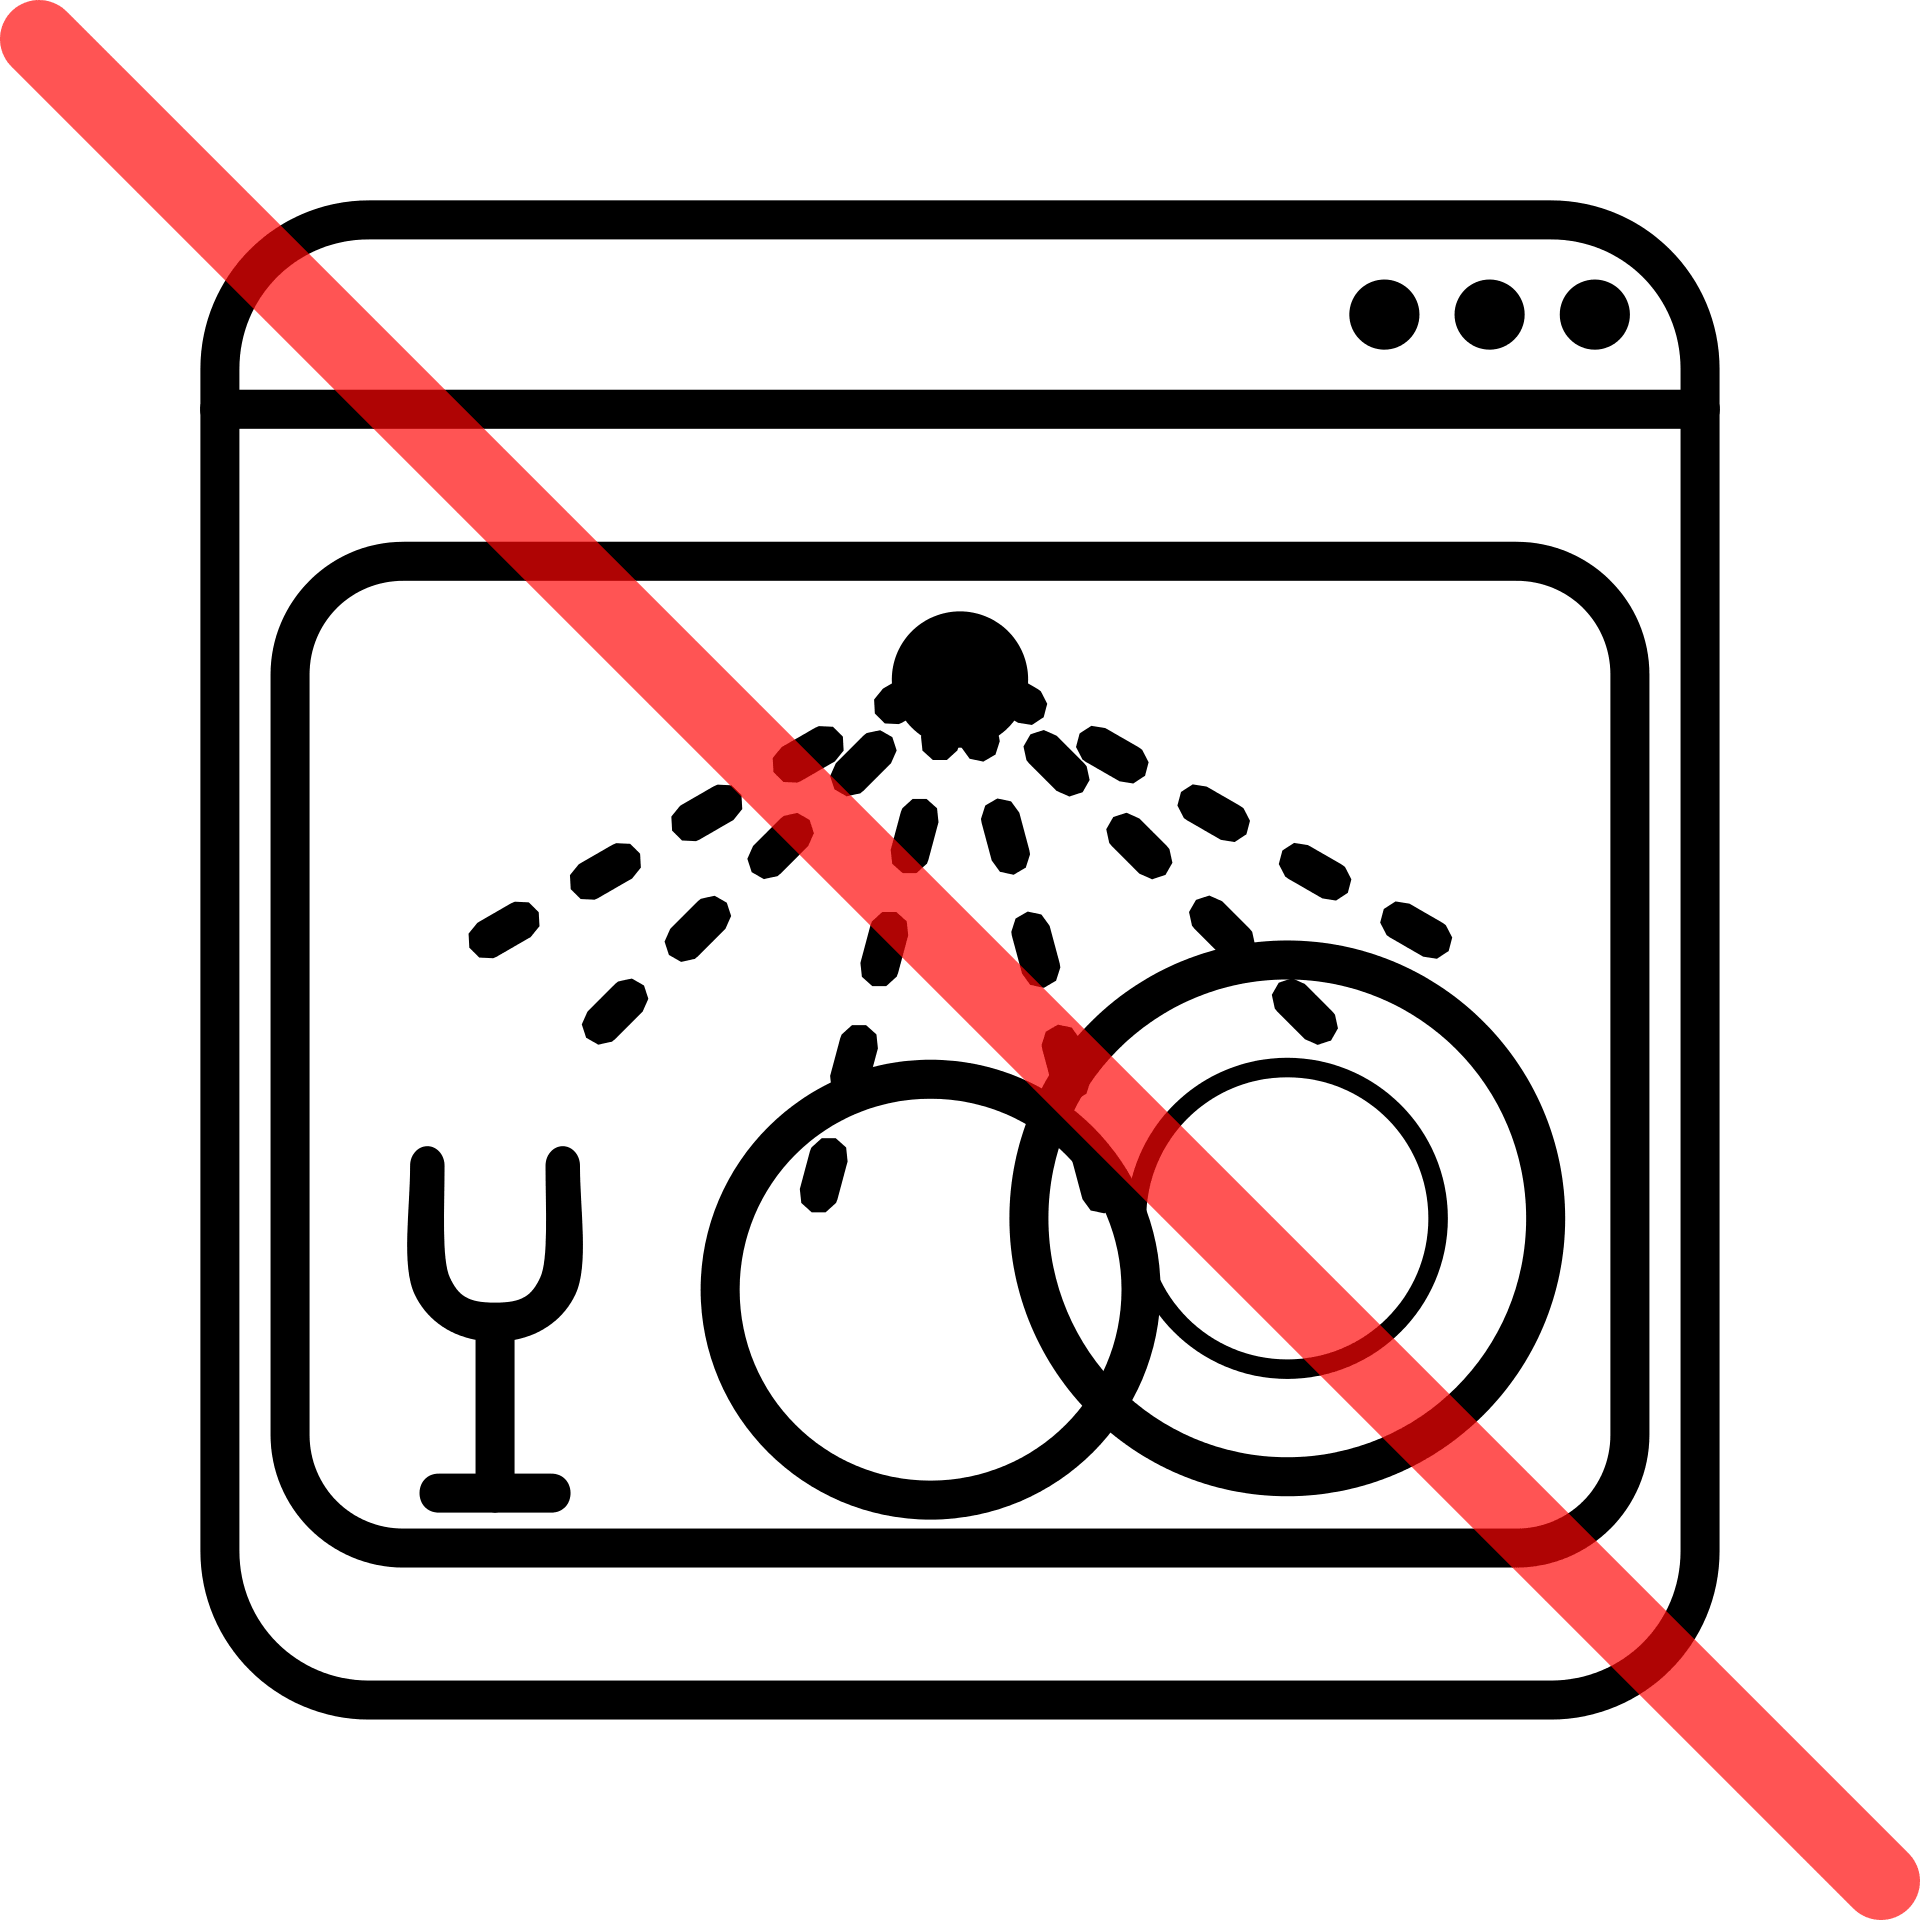 broken dishwasher icon